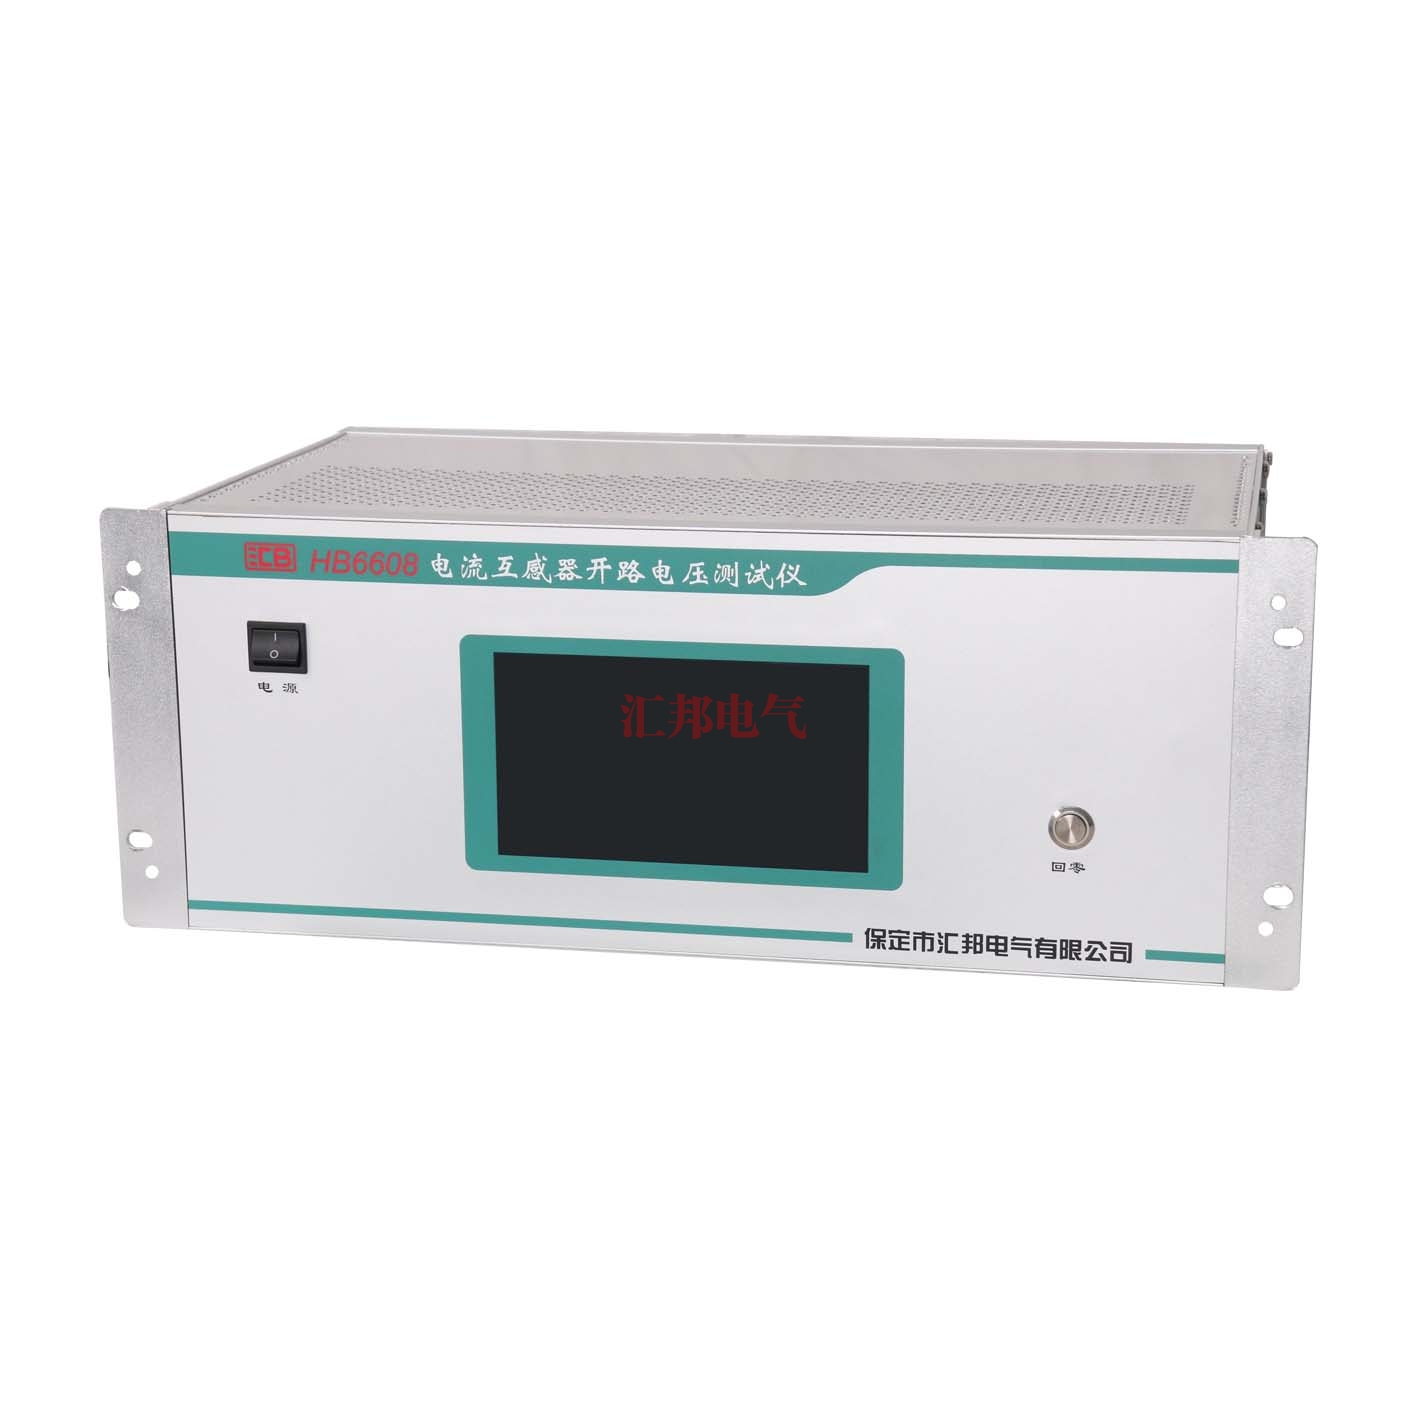 柳州HB6608   电流互感器开路电压测试仪